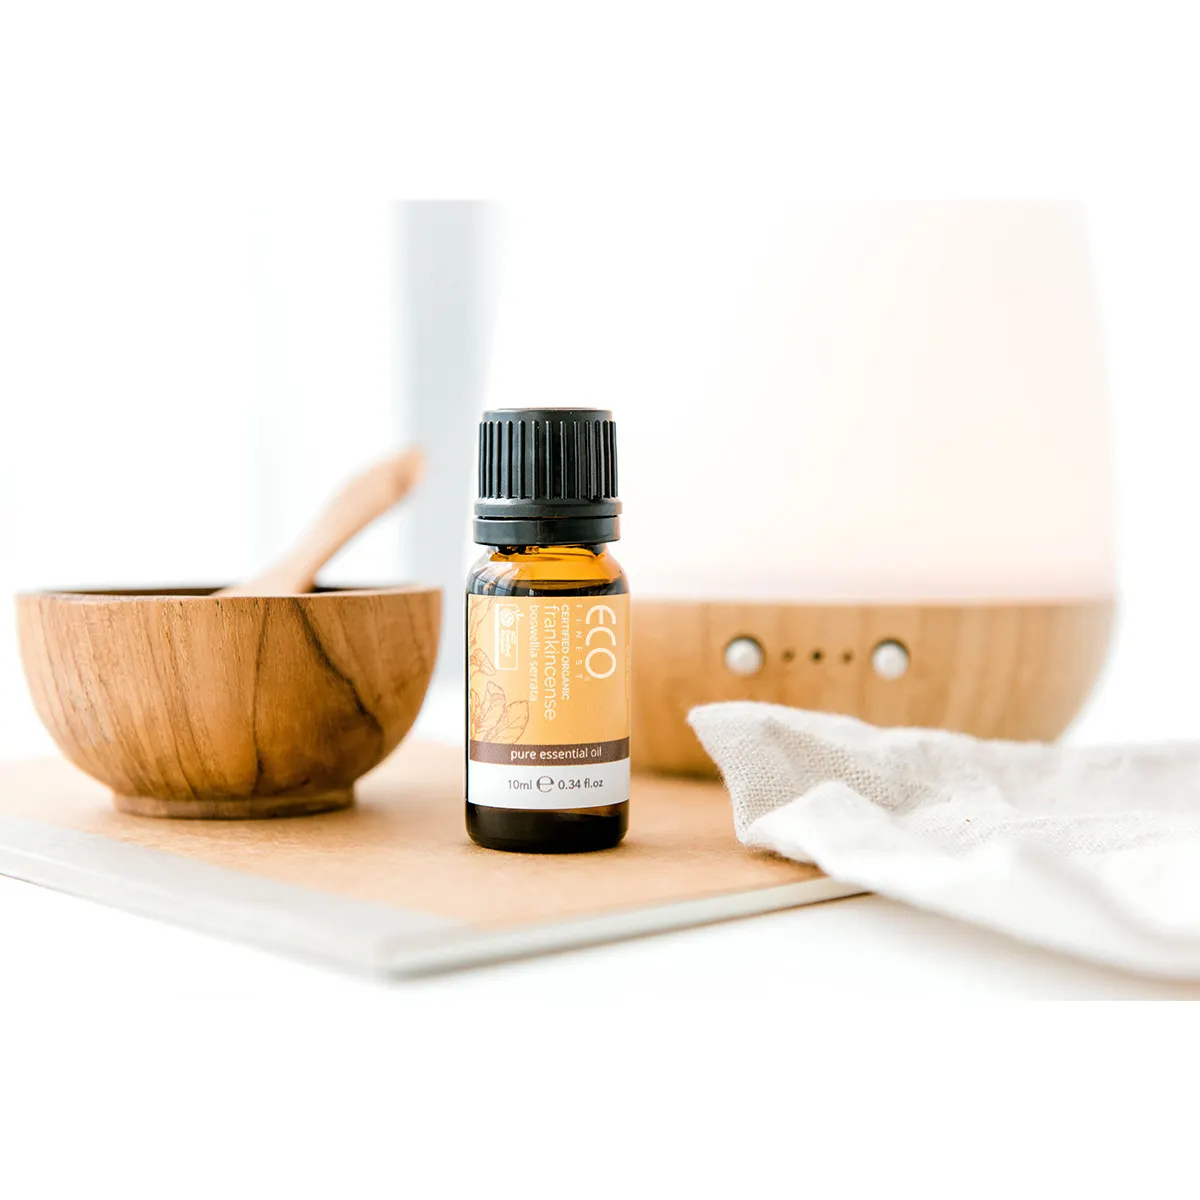 Olio essenziale di incenso biologico per aromaterapia naturale puro al 100% certificato-826188